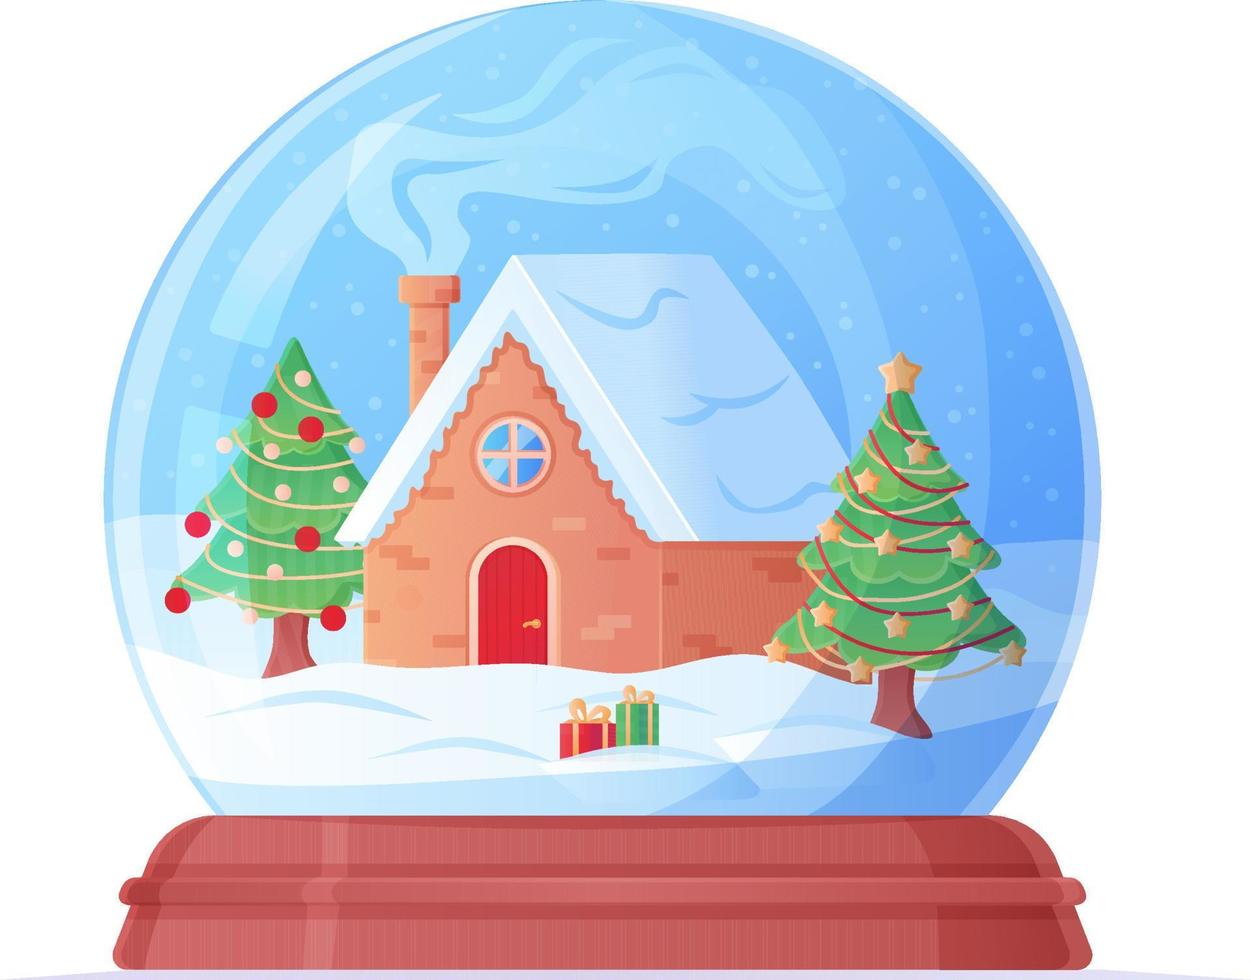 globo de nieve con una casa acogedora y una ilustración de dibujos animados de árboles de navidad. vector